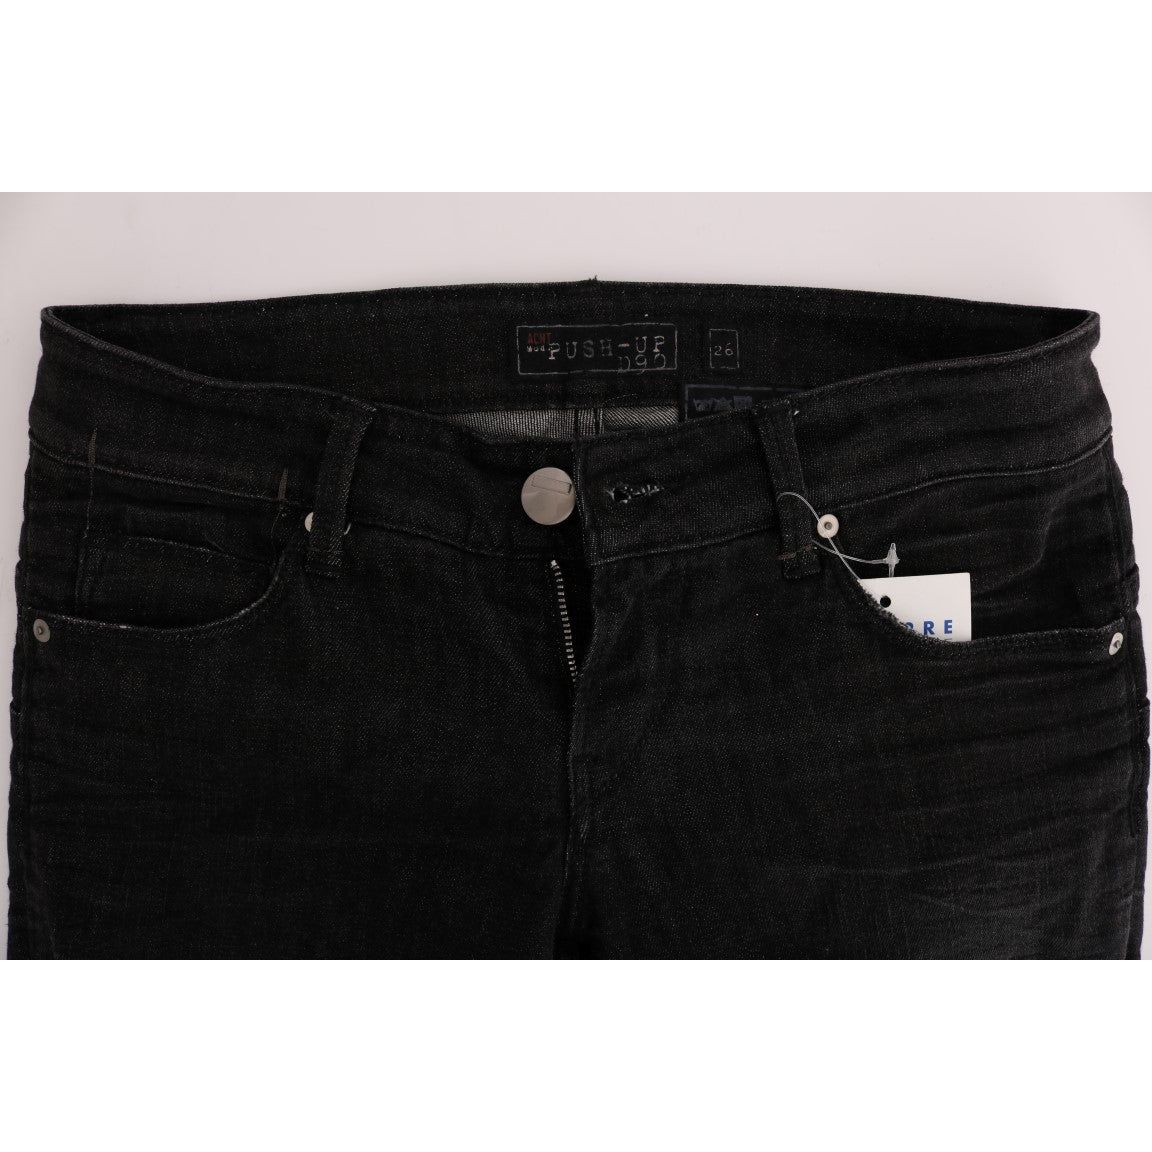 Acht Chic Slim Fit Black Cotton Jeans black-denim-cotton-bottoms-slim-fit-jeans Jeans & Pants